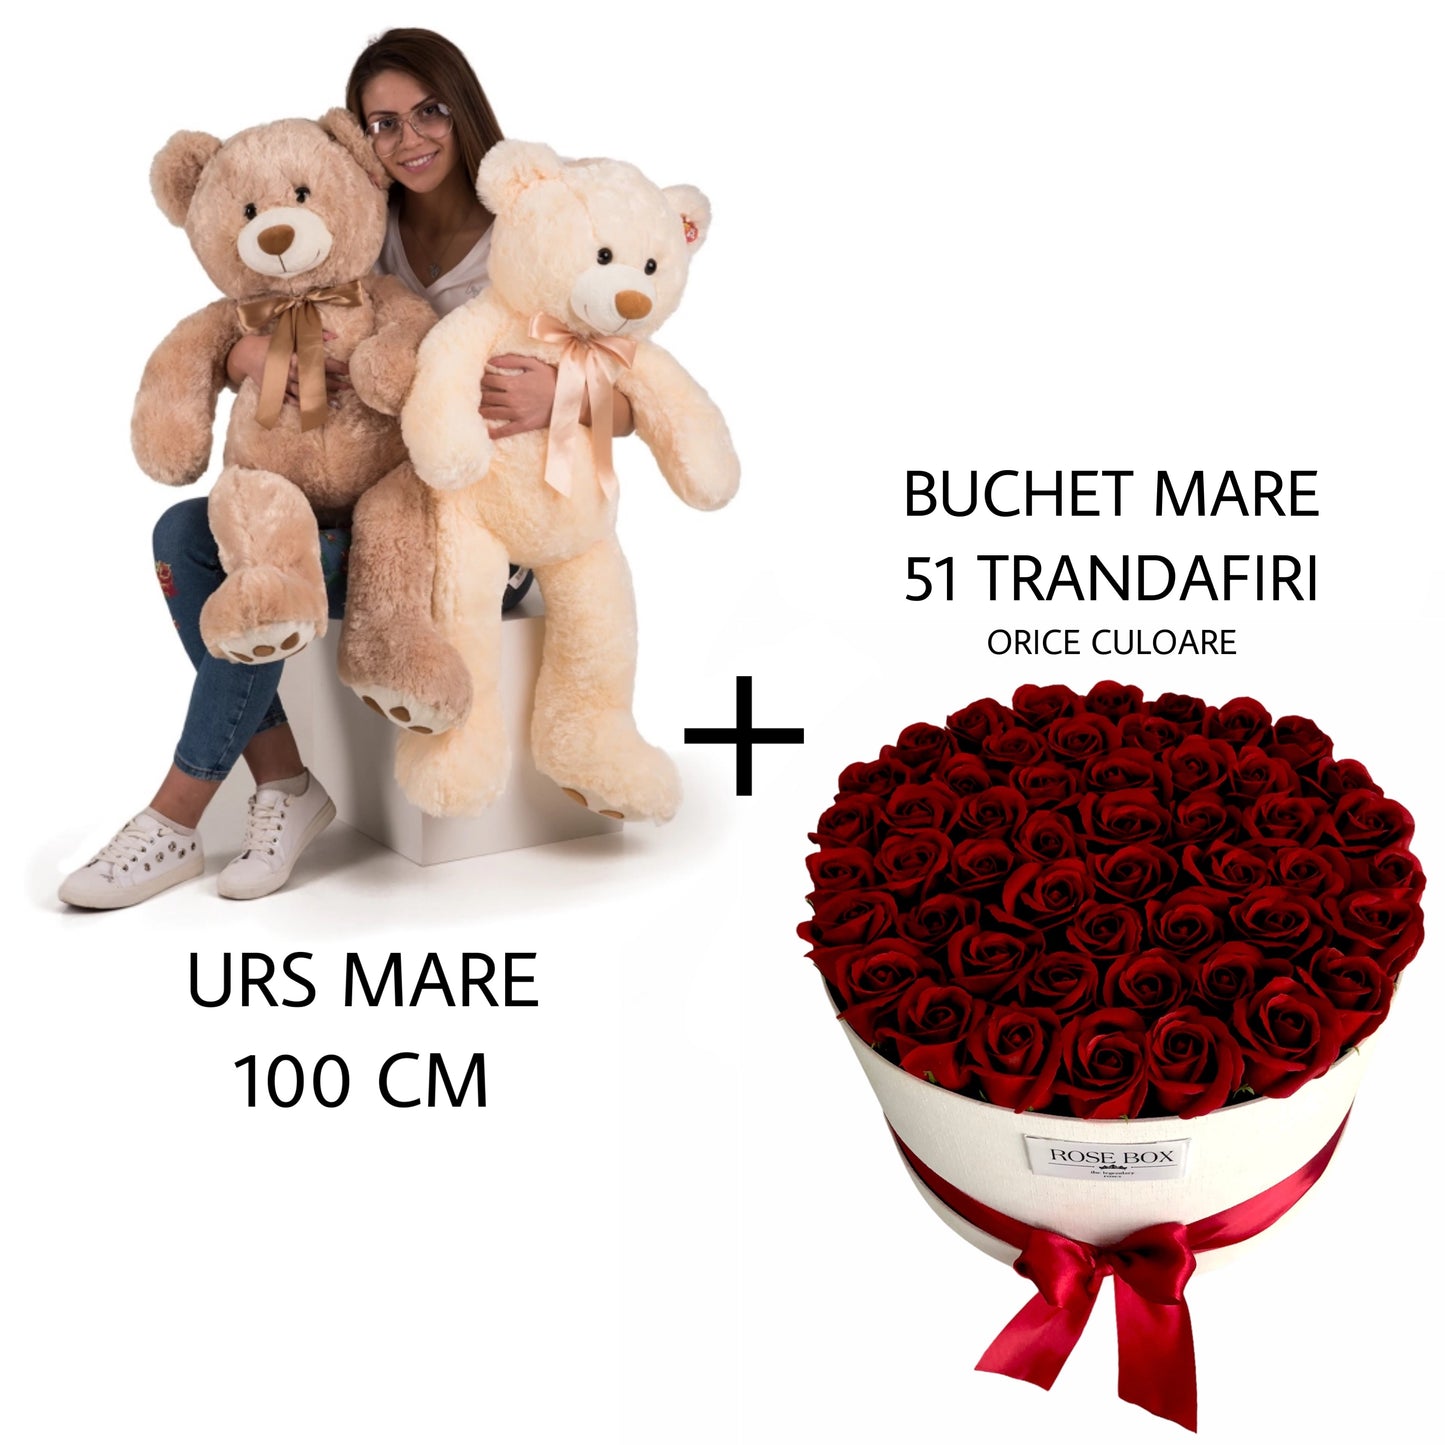 Urs mare 100cm + Cutie cu 51 trandafiri- alege orice culoare